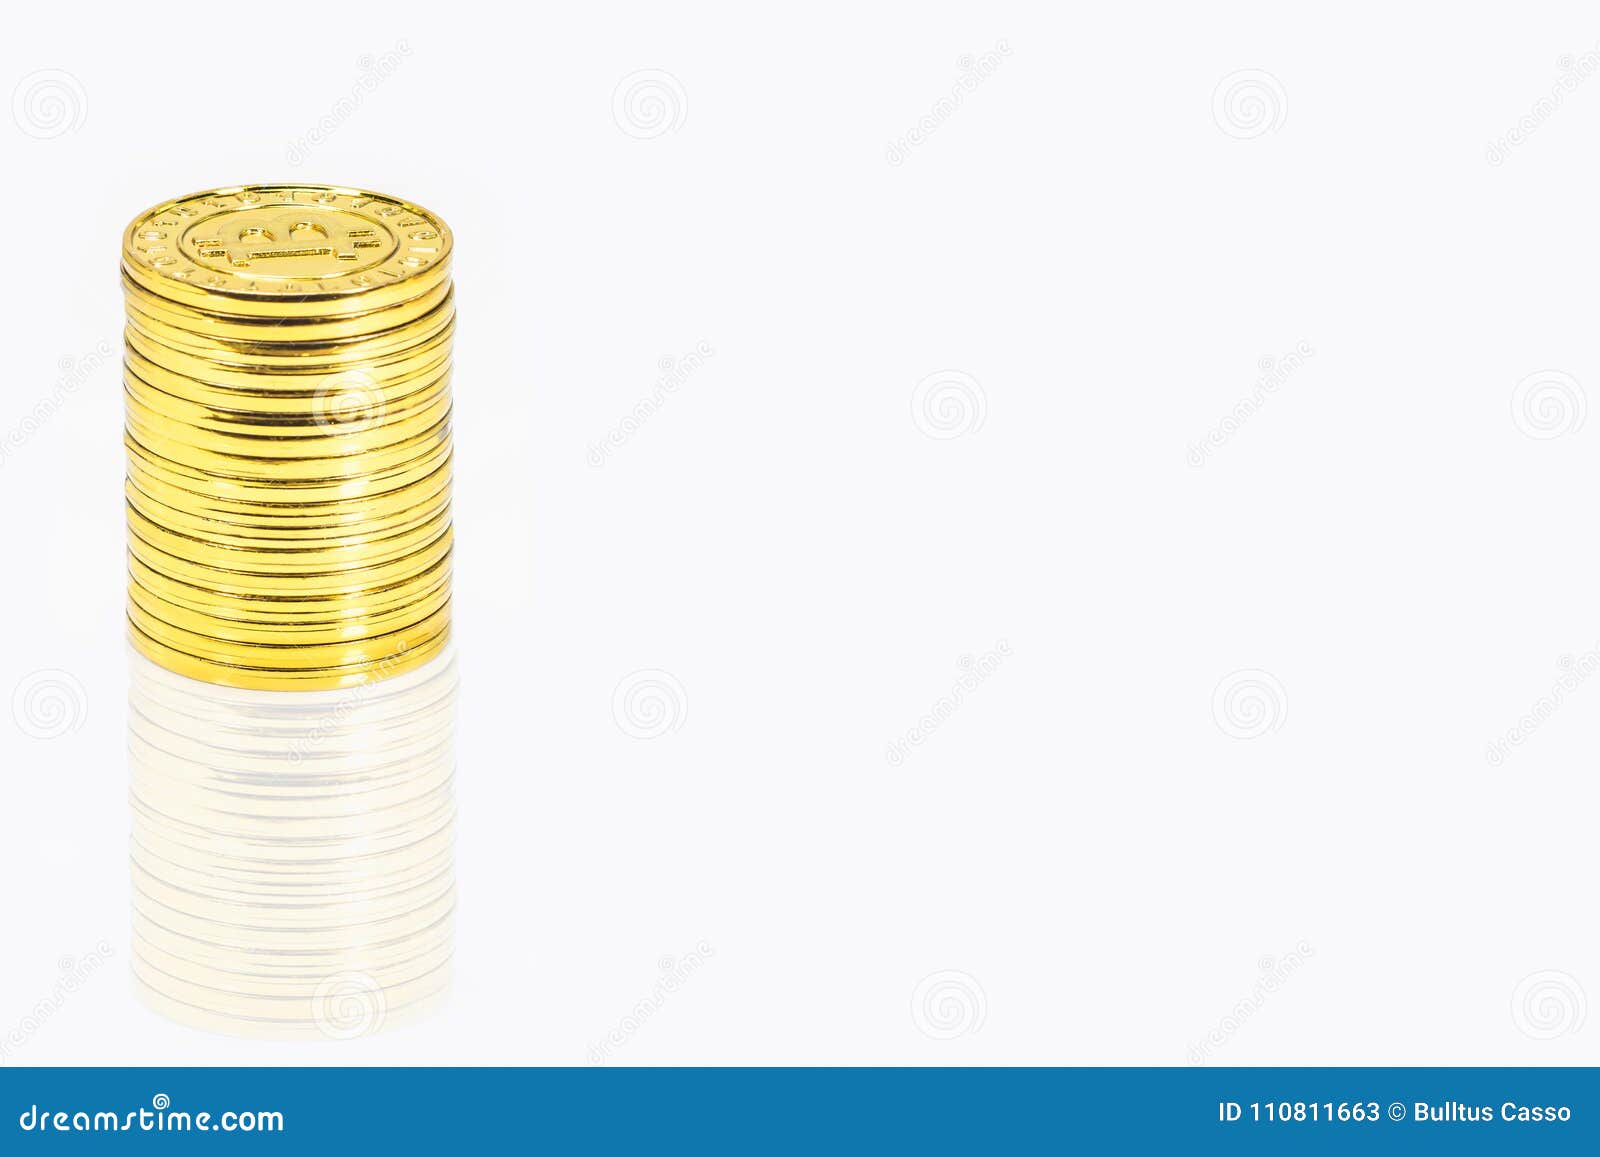 Goldener bitcoin Stapel auf lokalisiertem Weiß